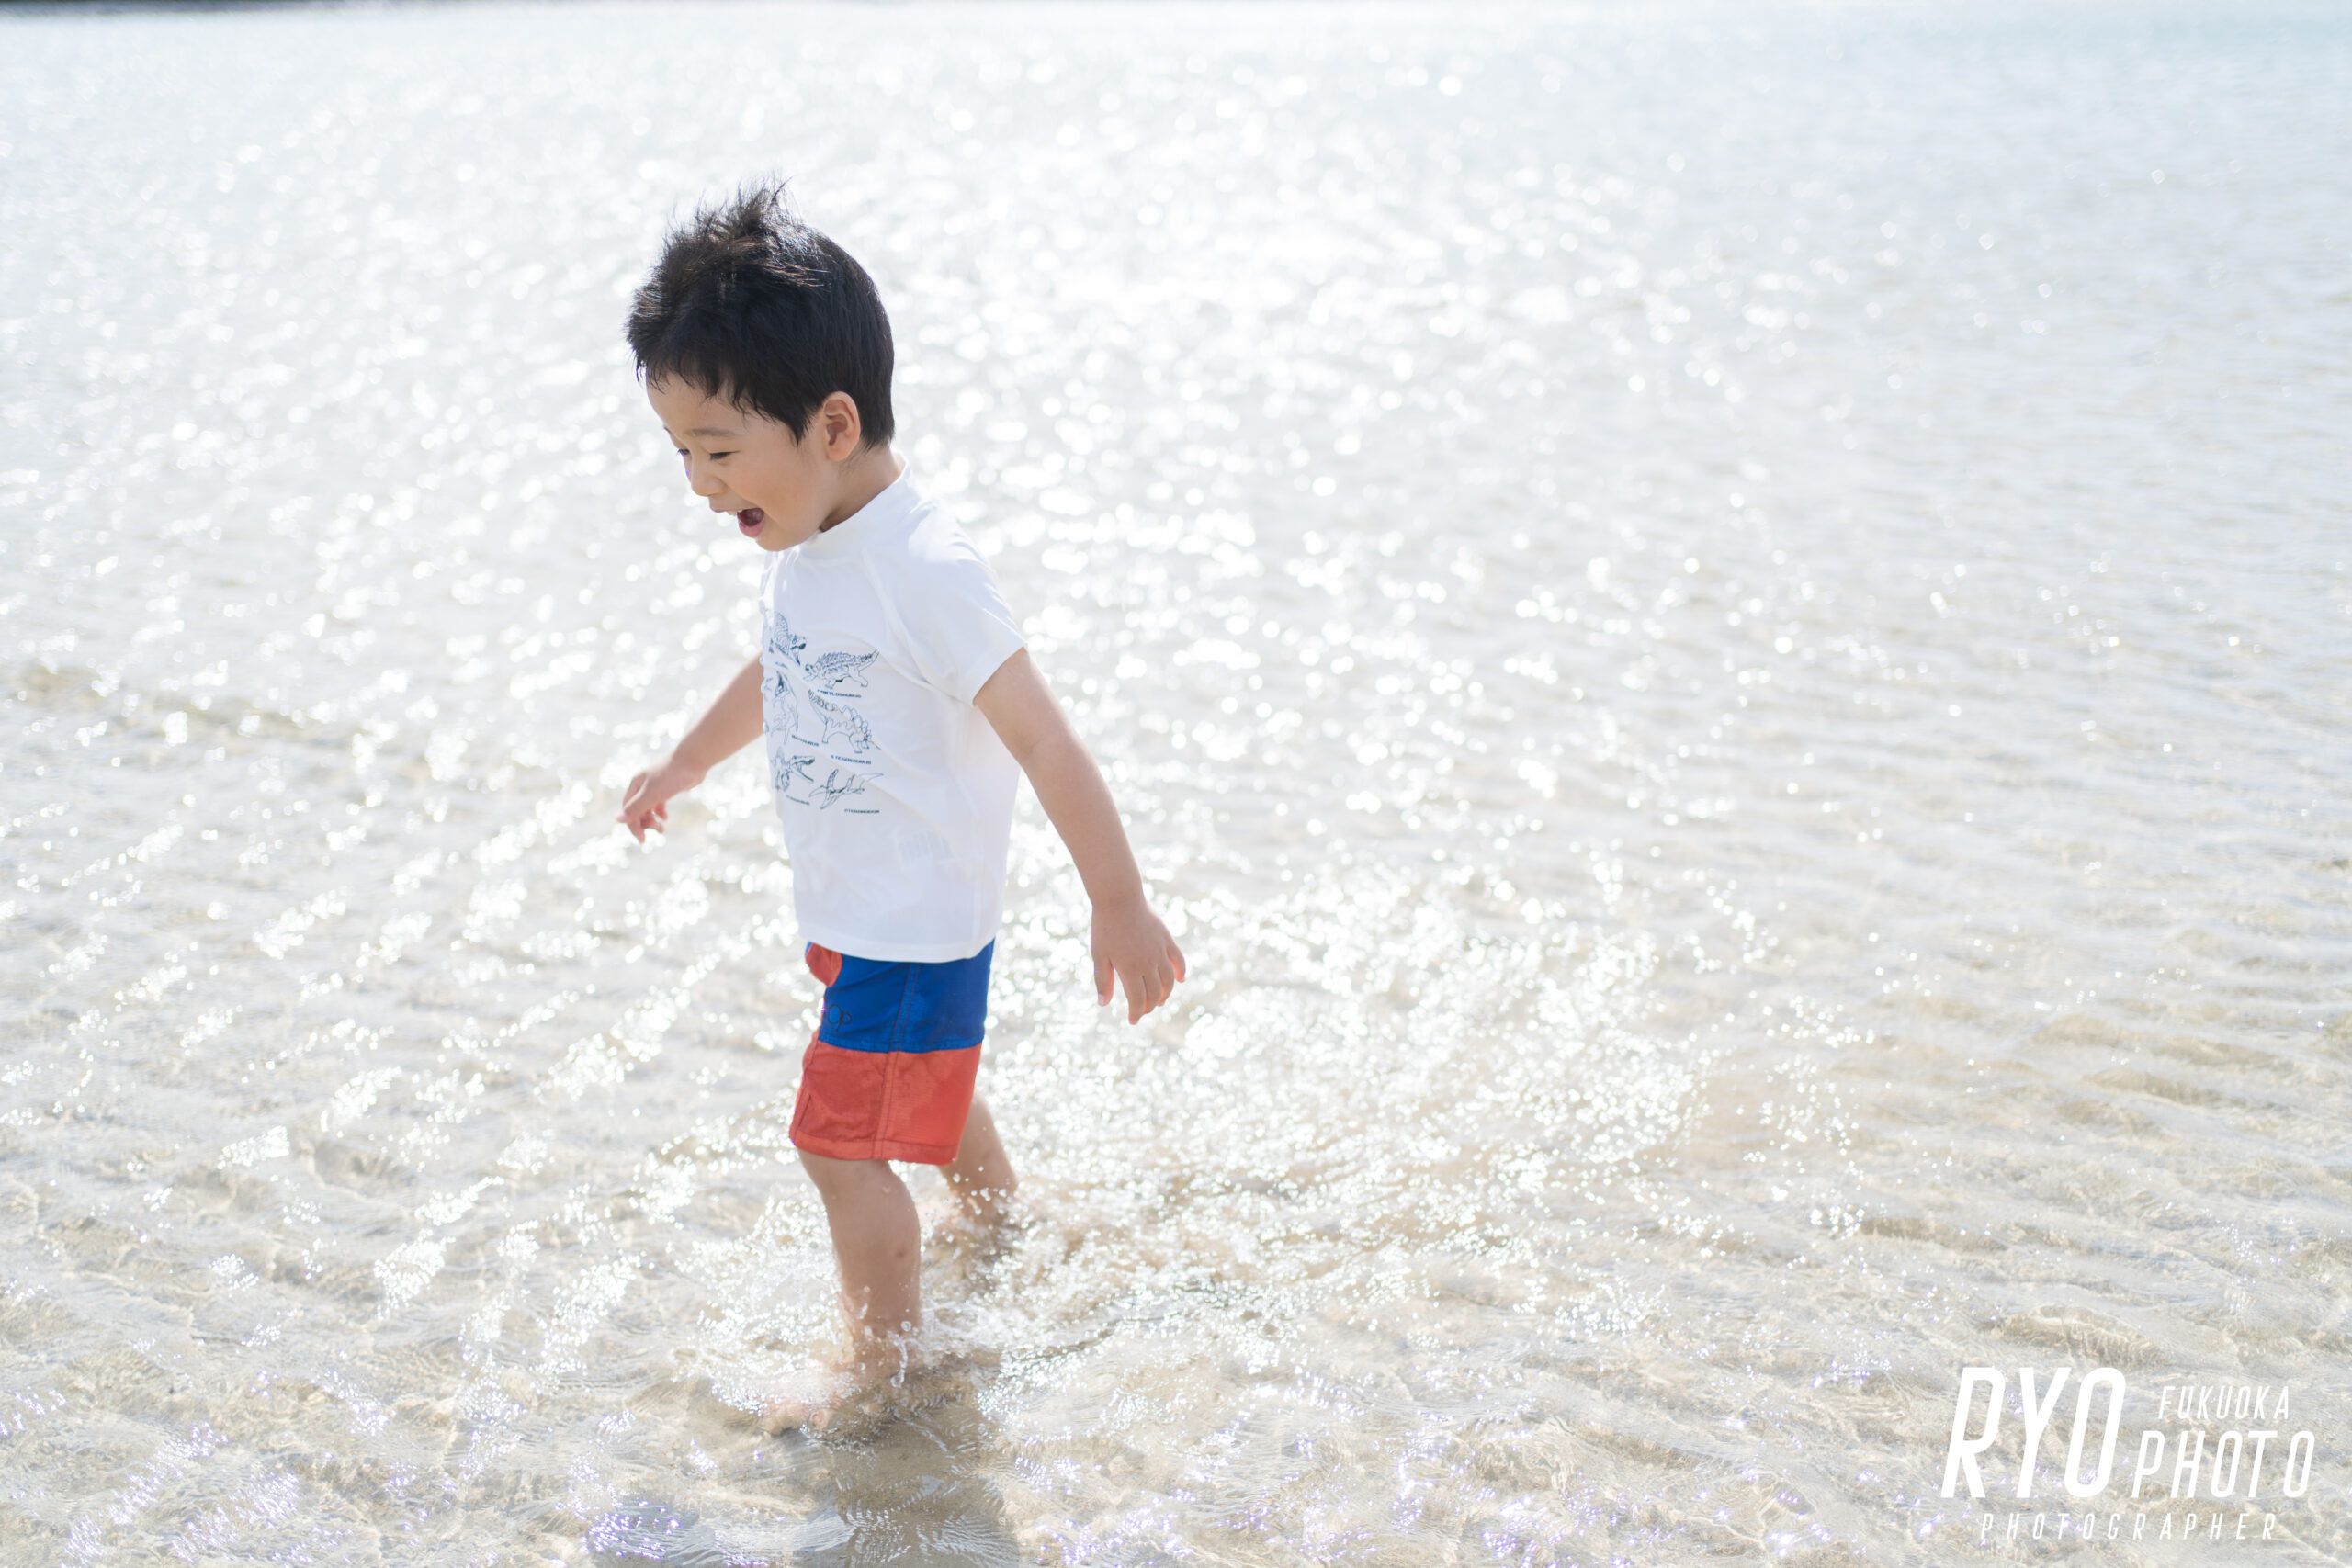 松浦市の大崎海水浴場で撮影した子供の写真